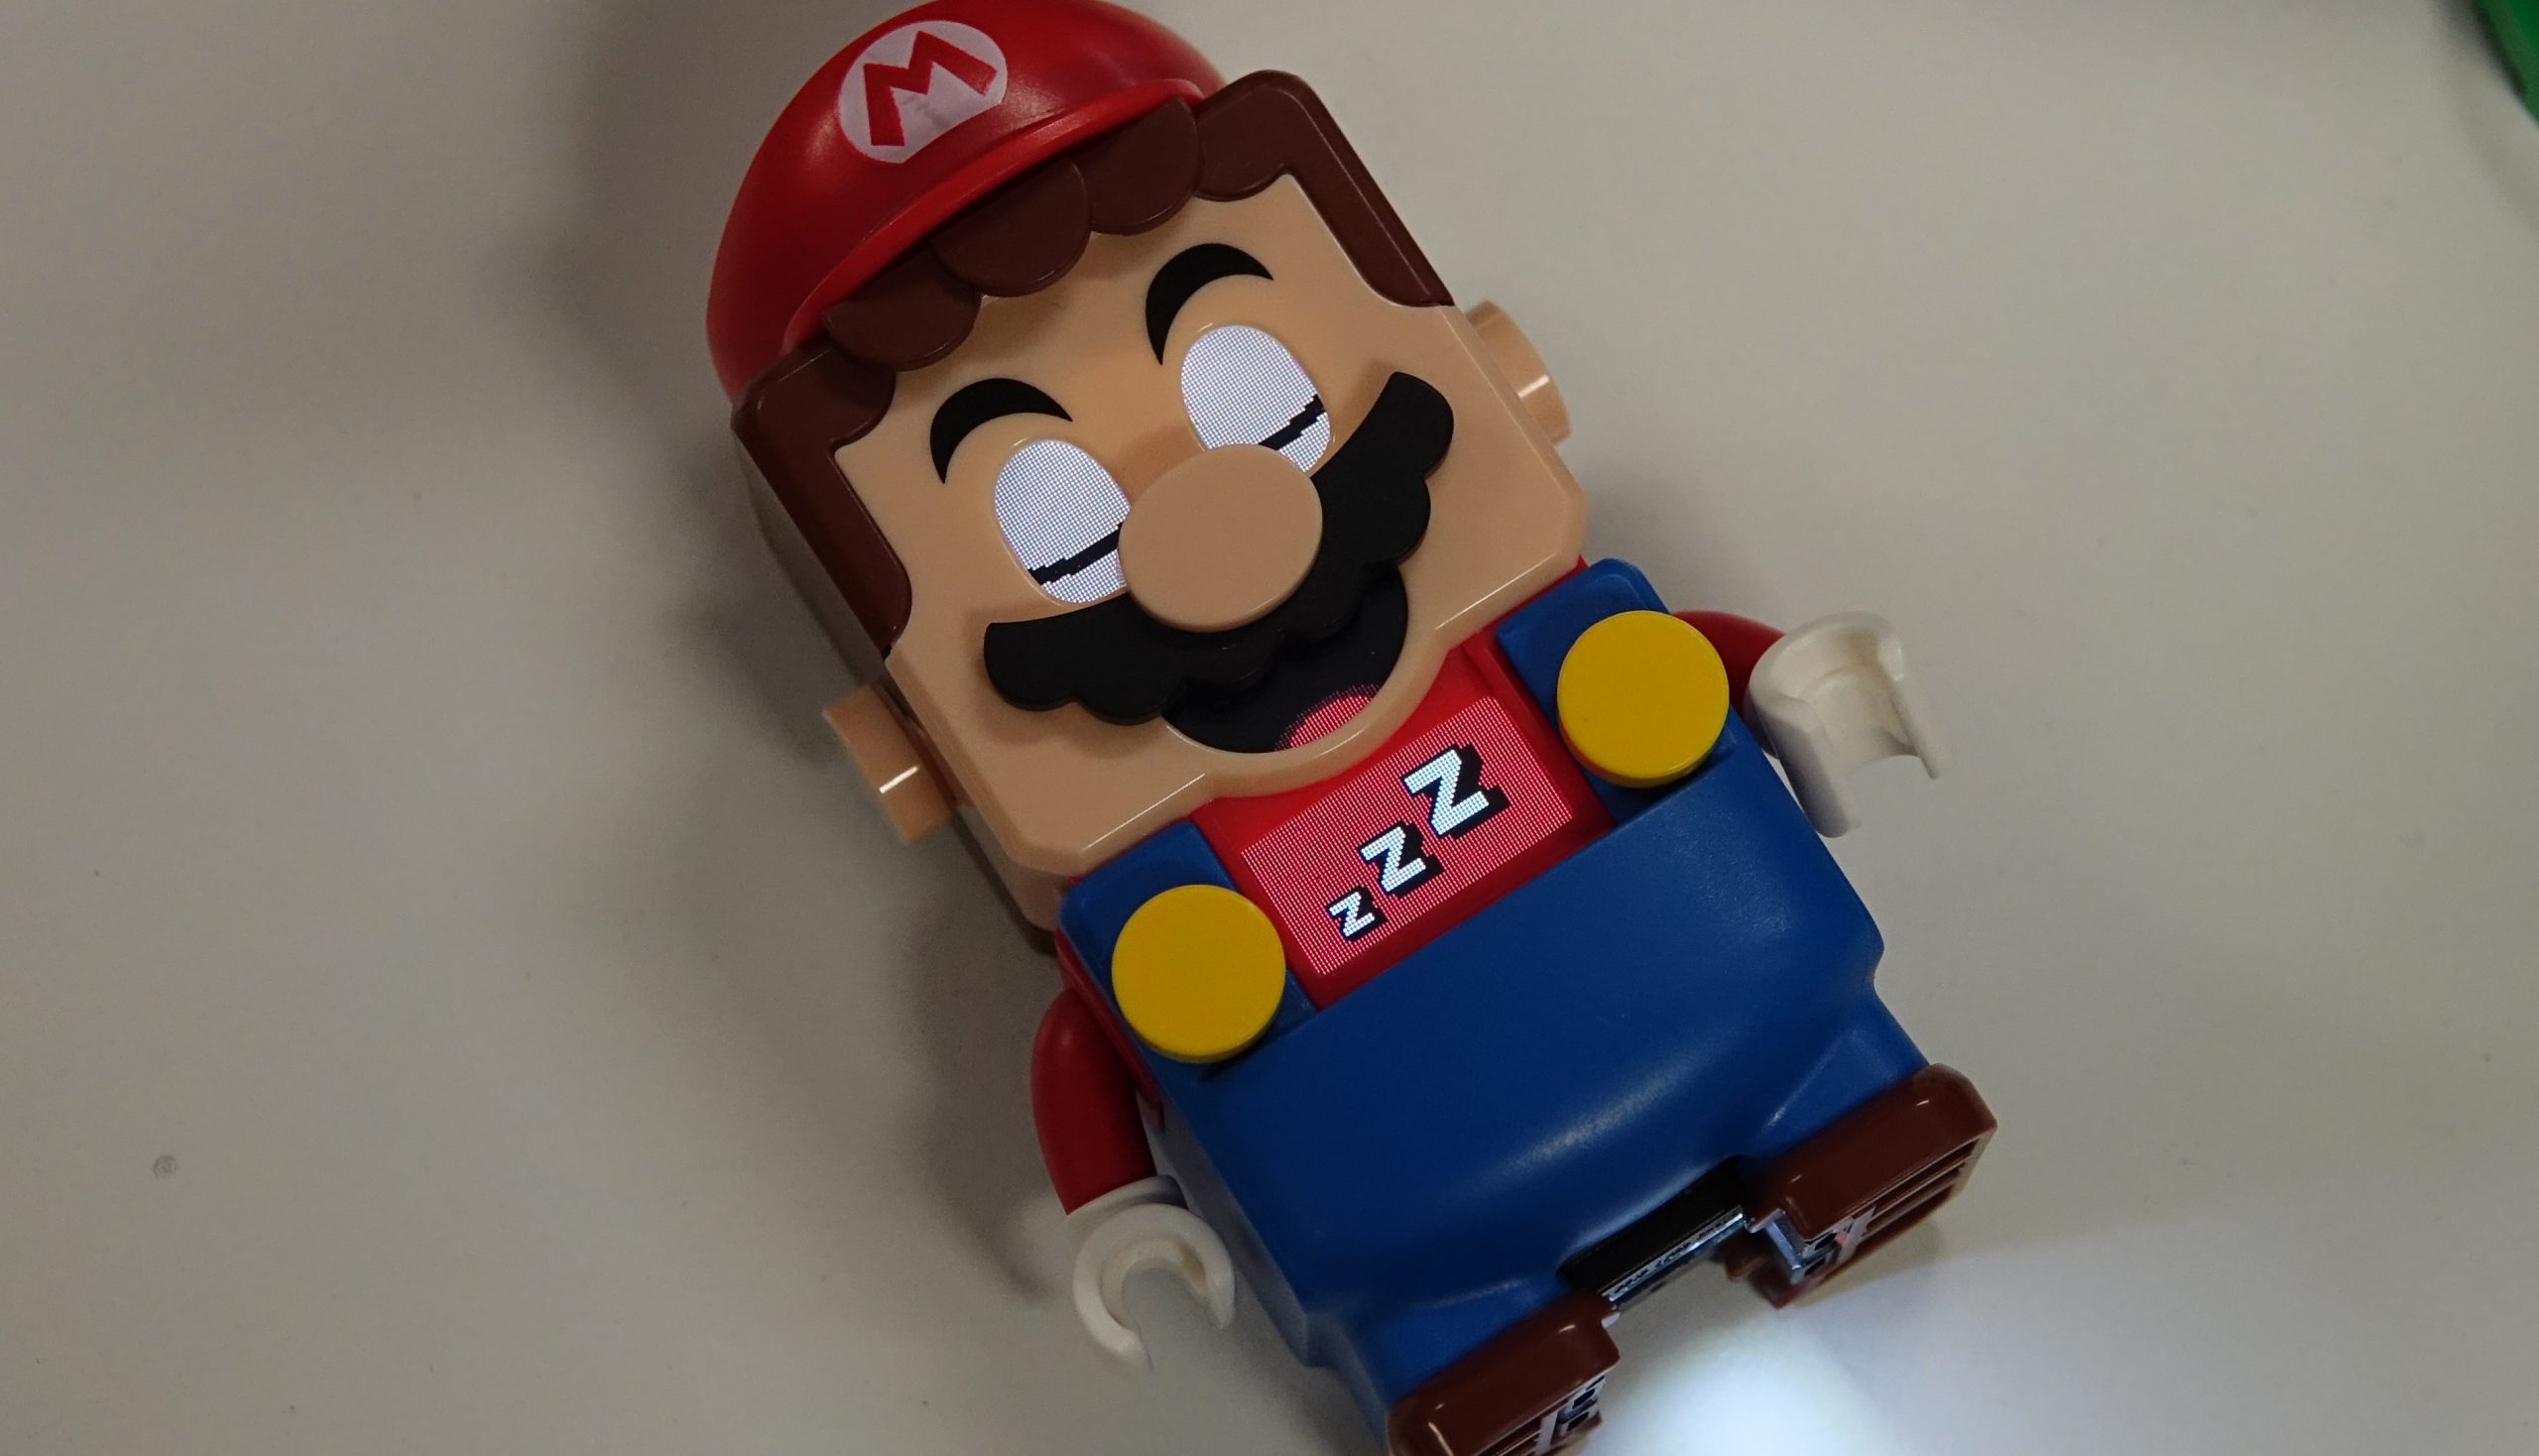 O Mario virou lego!